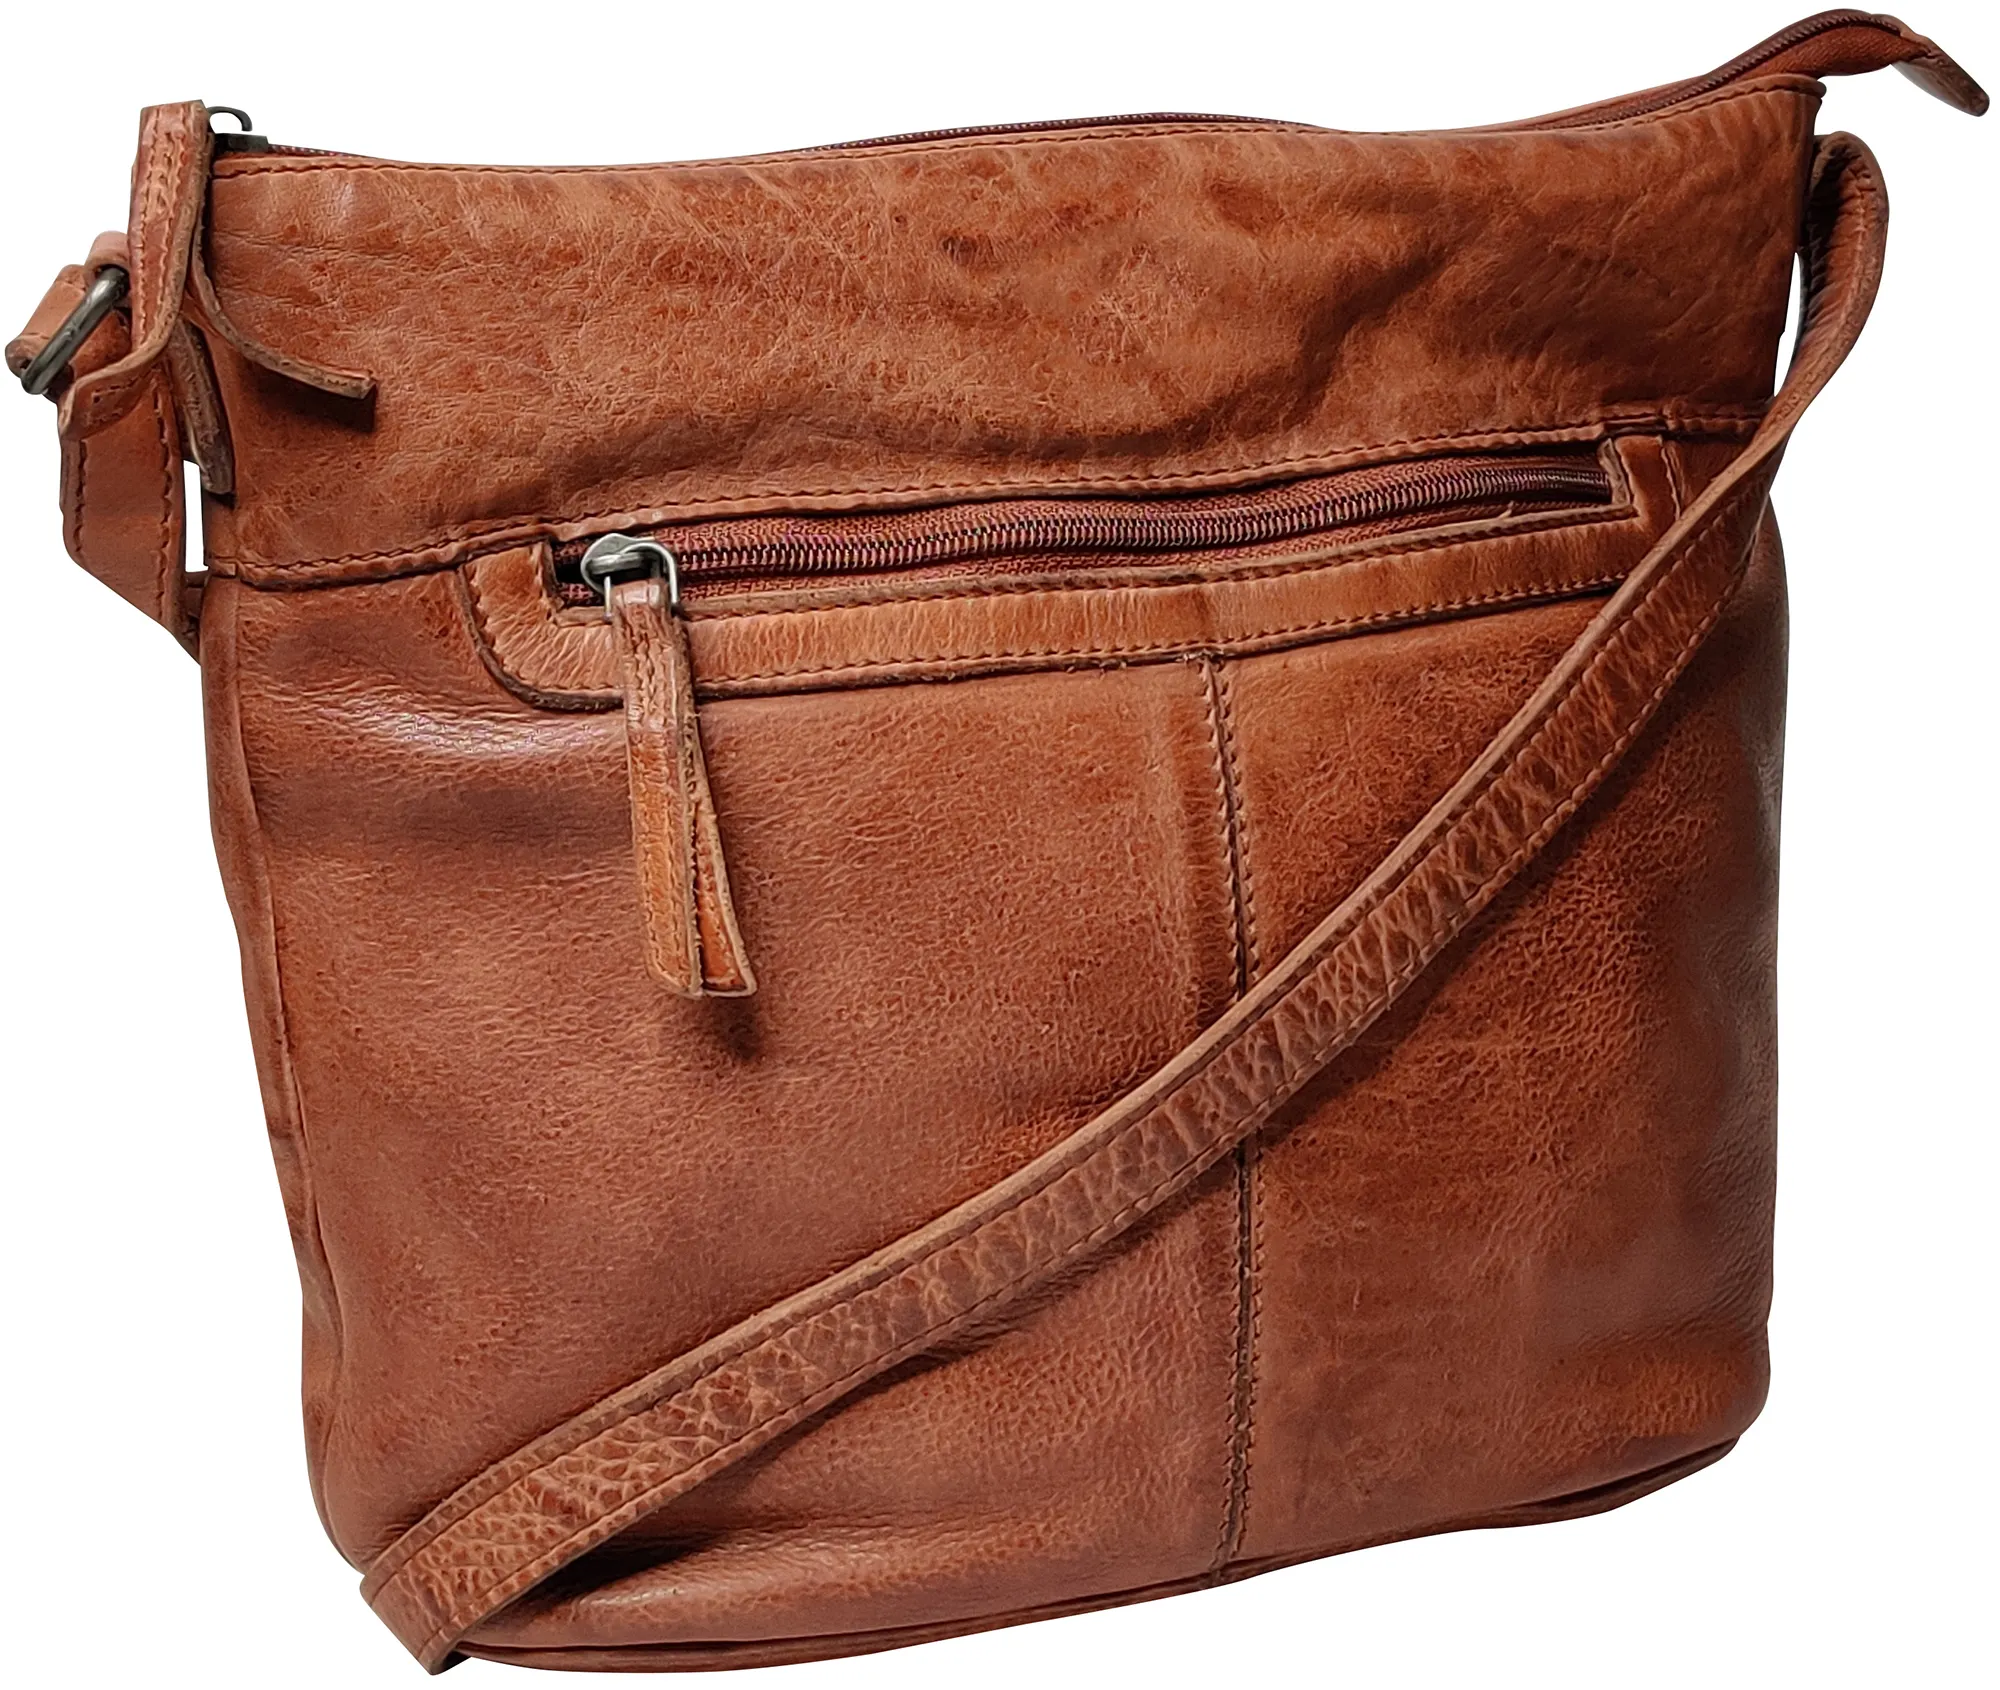 Leather Sling Bag for Women - Washed Leather Crossbody Bag Vintage Travel Shoulder Purse Handbags for Girls, Brick Red